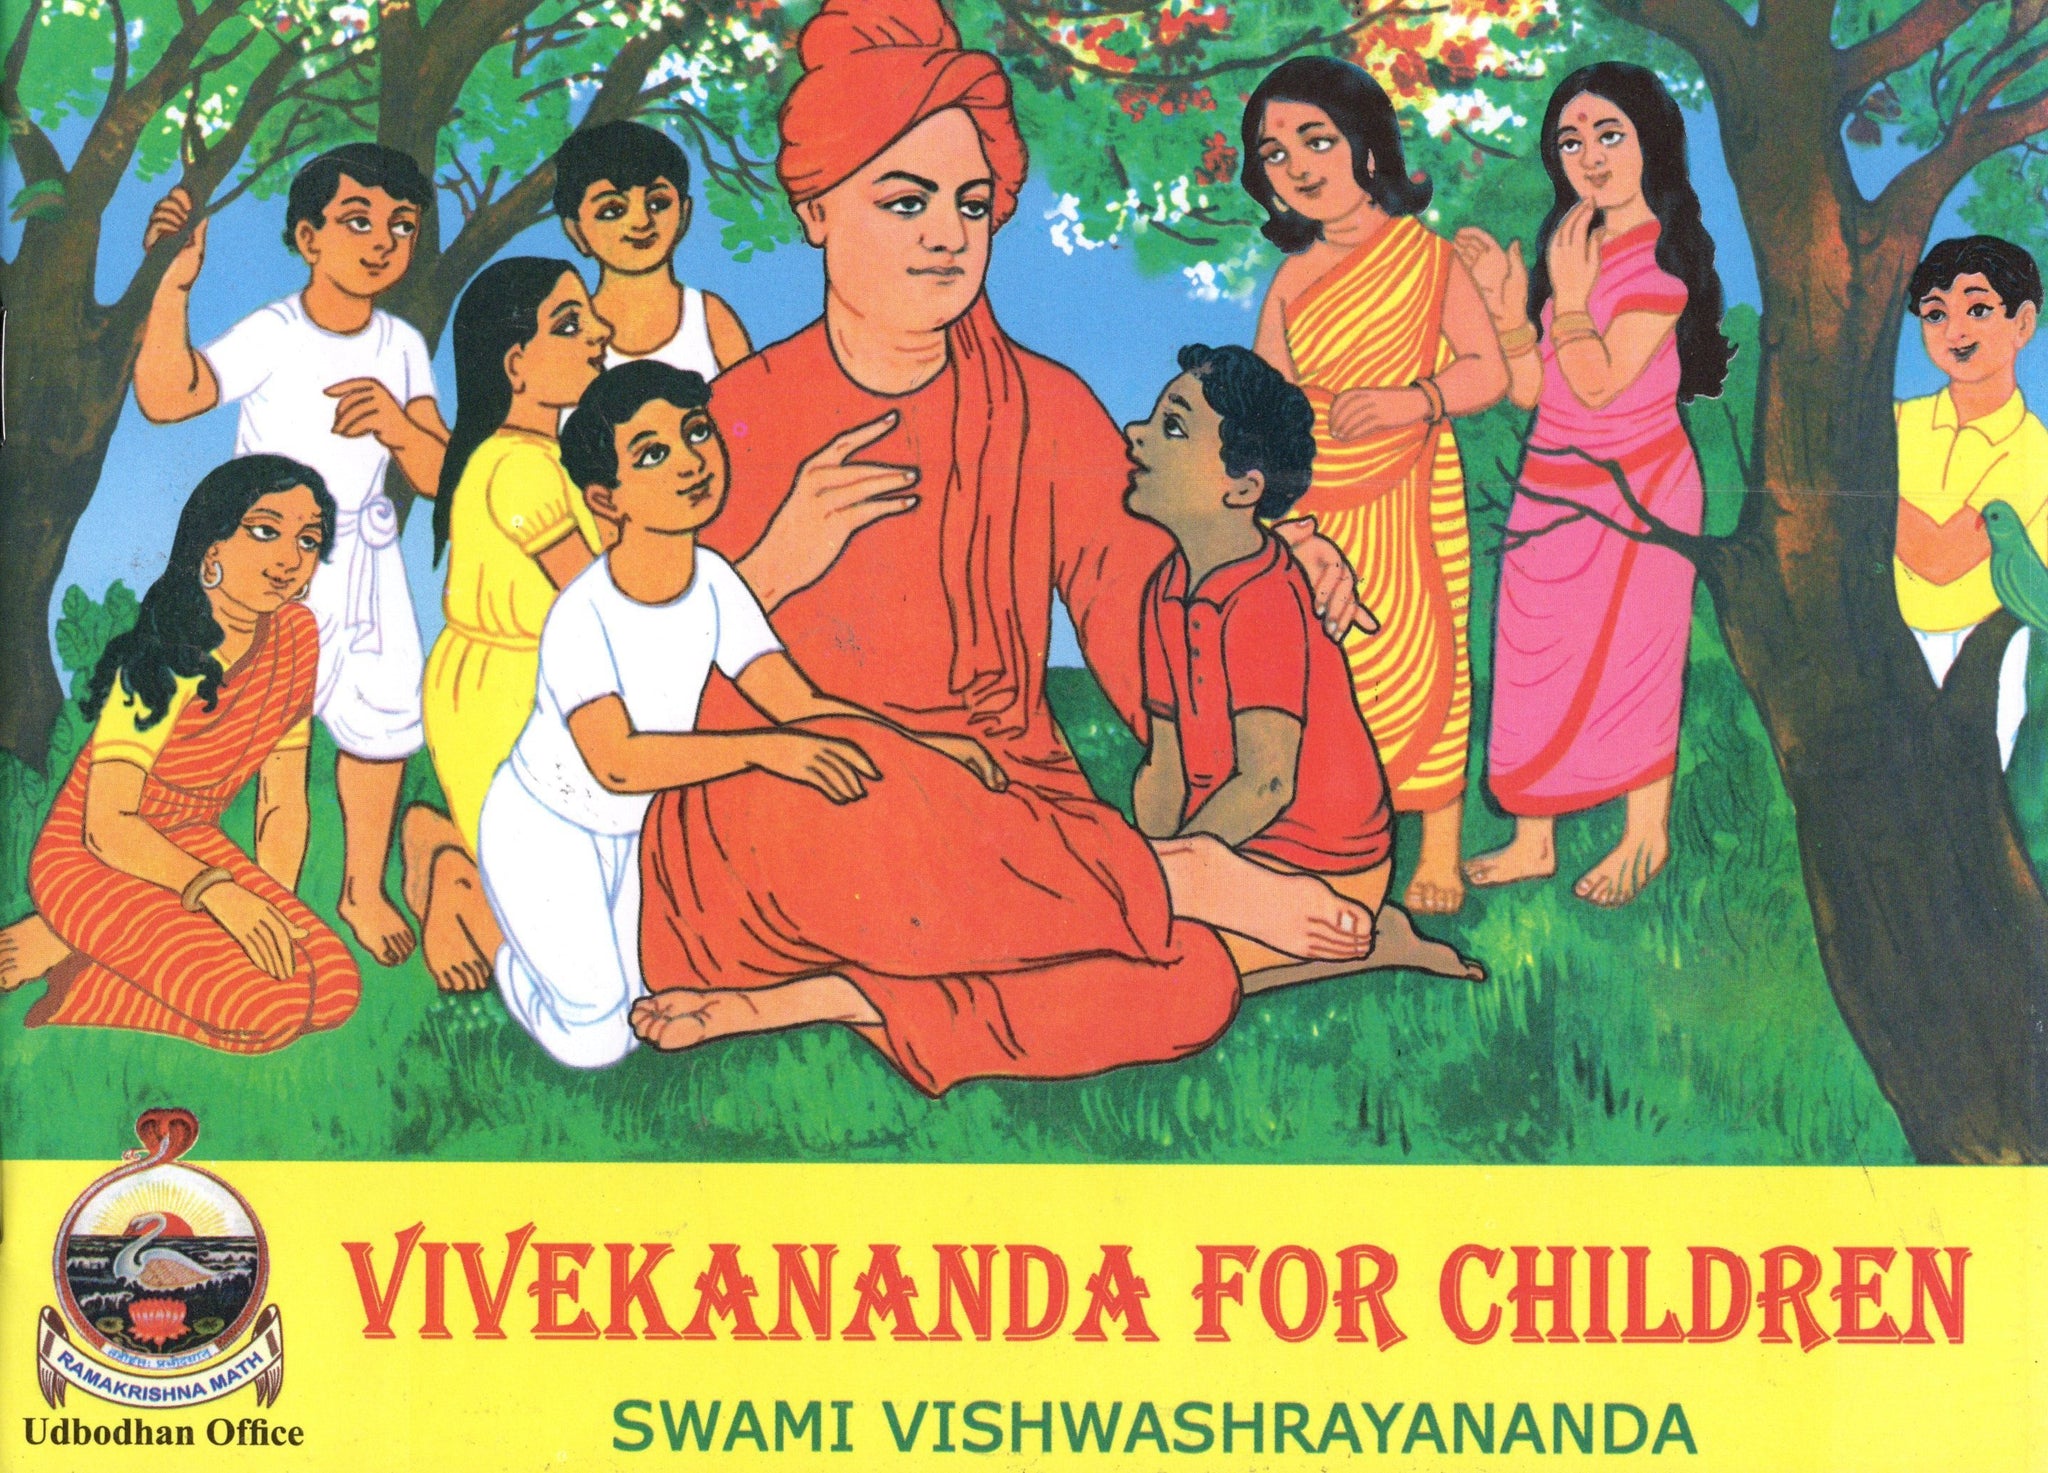 Vivekananda for Children